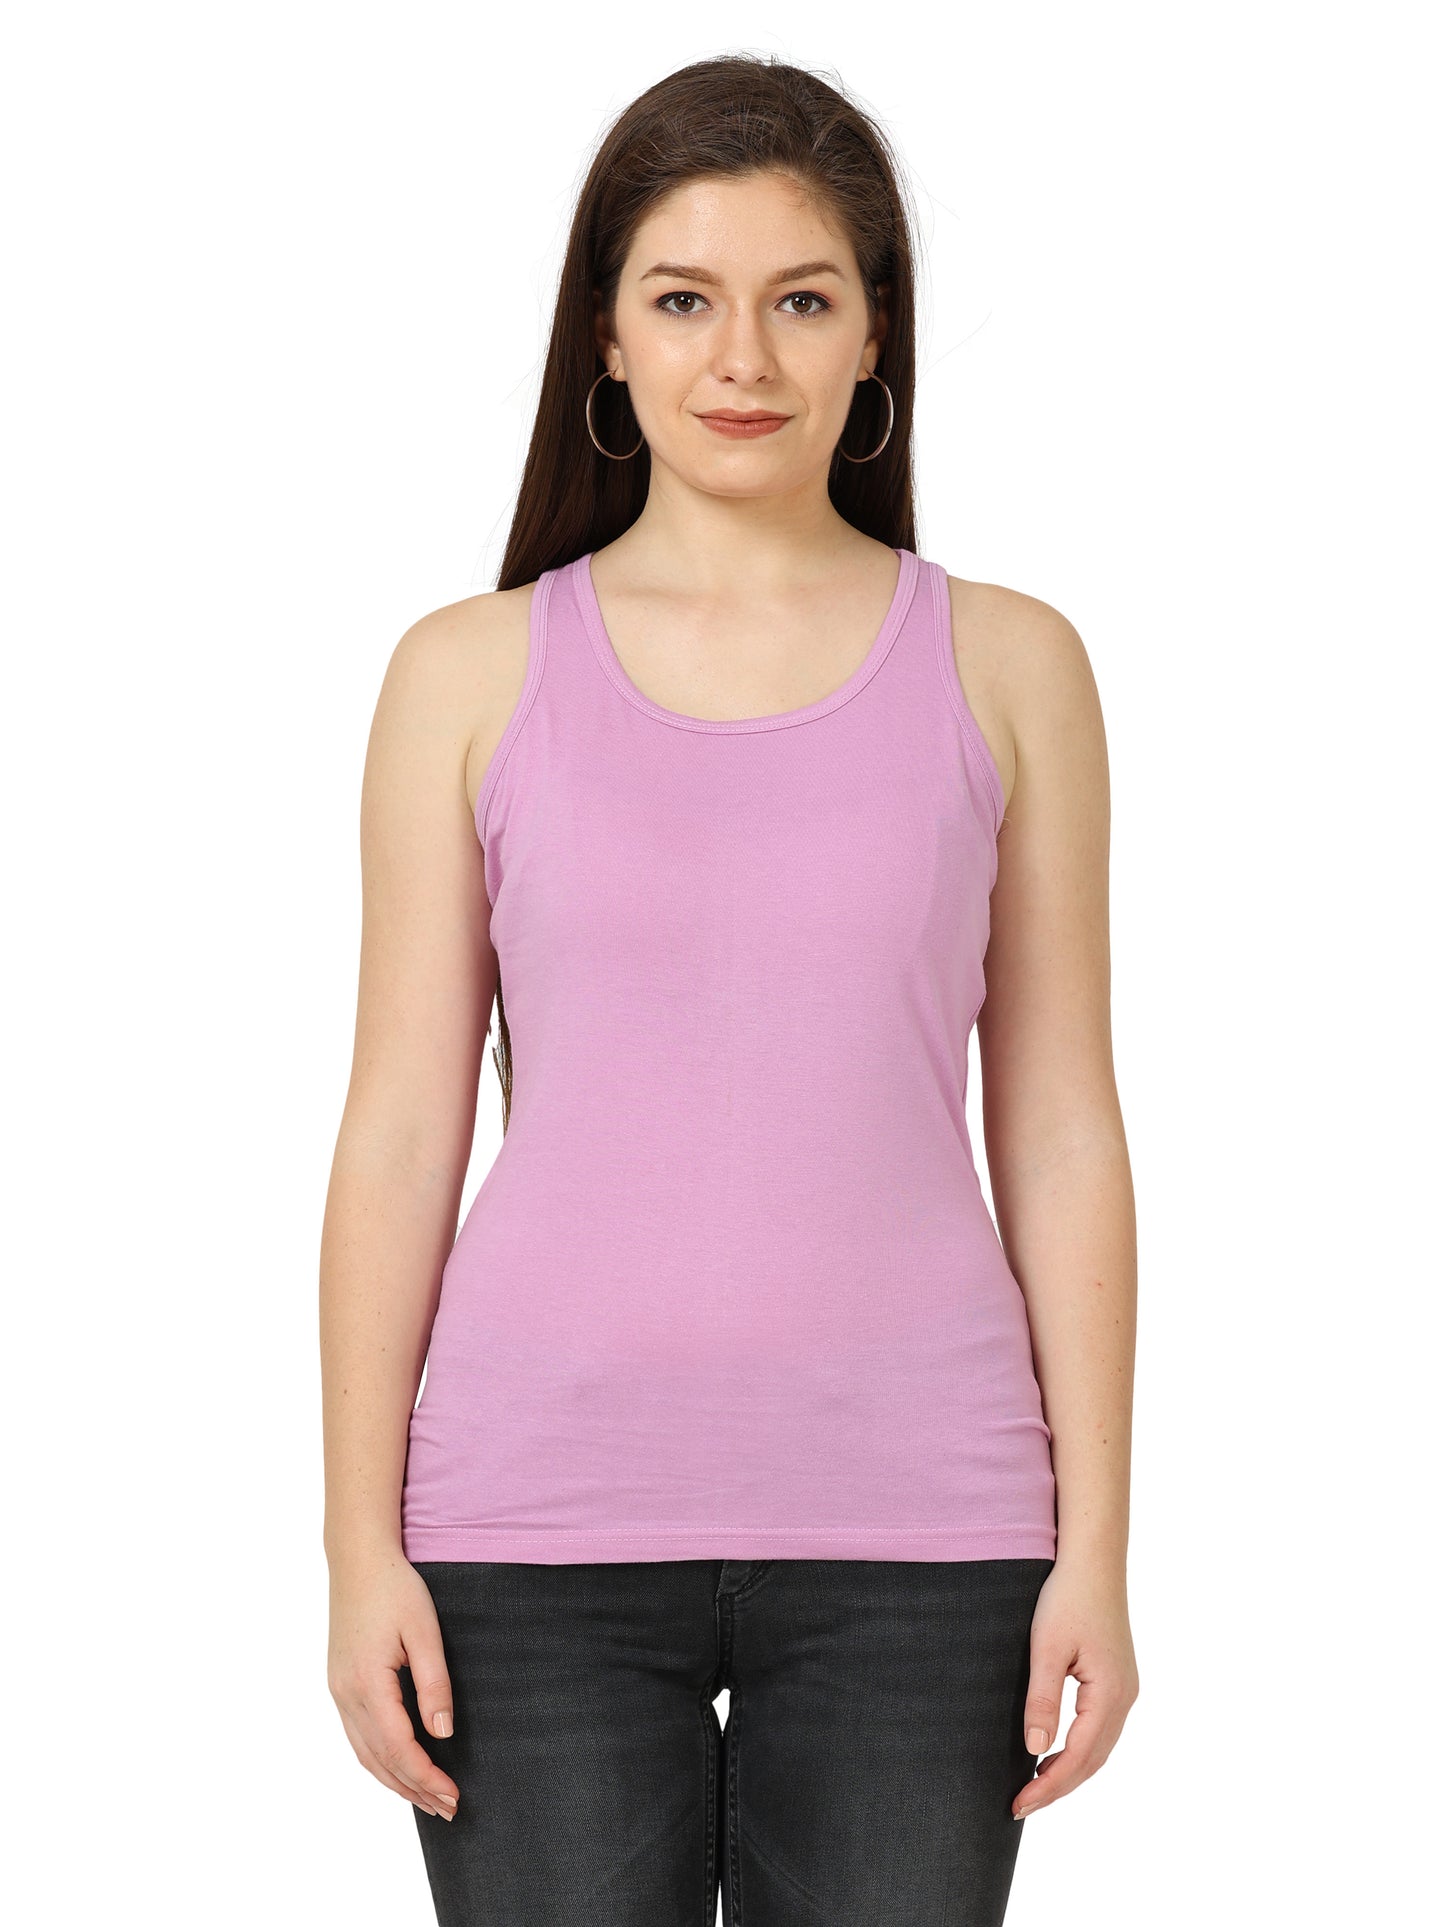 Women's Cotton Plain Sleeveless Lavender Color Top